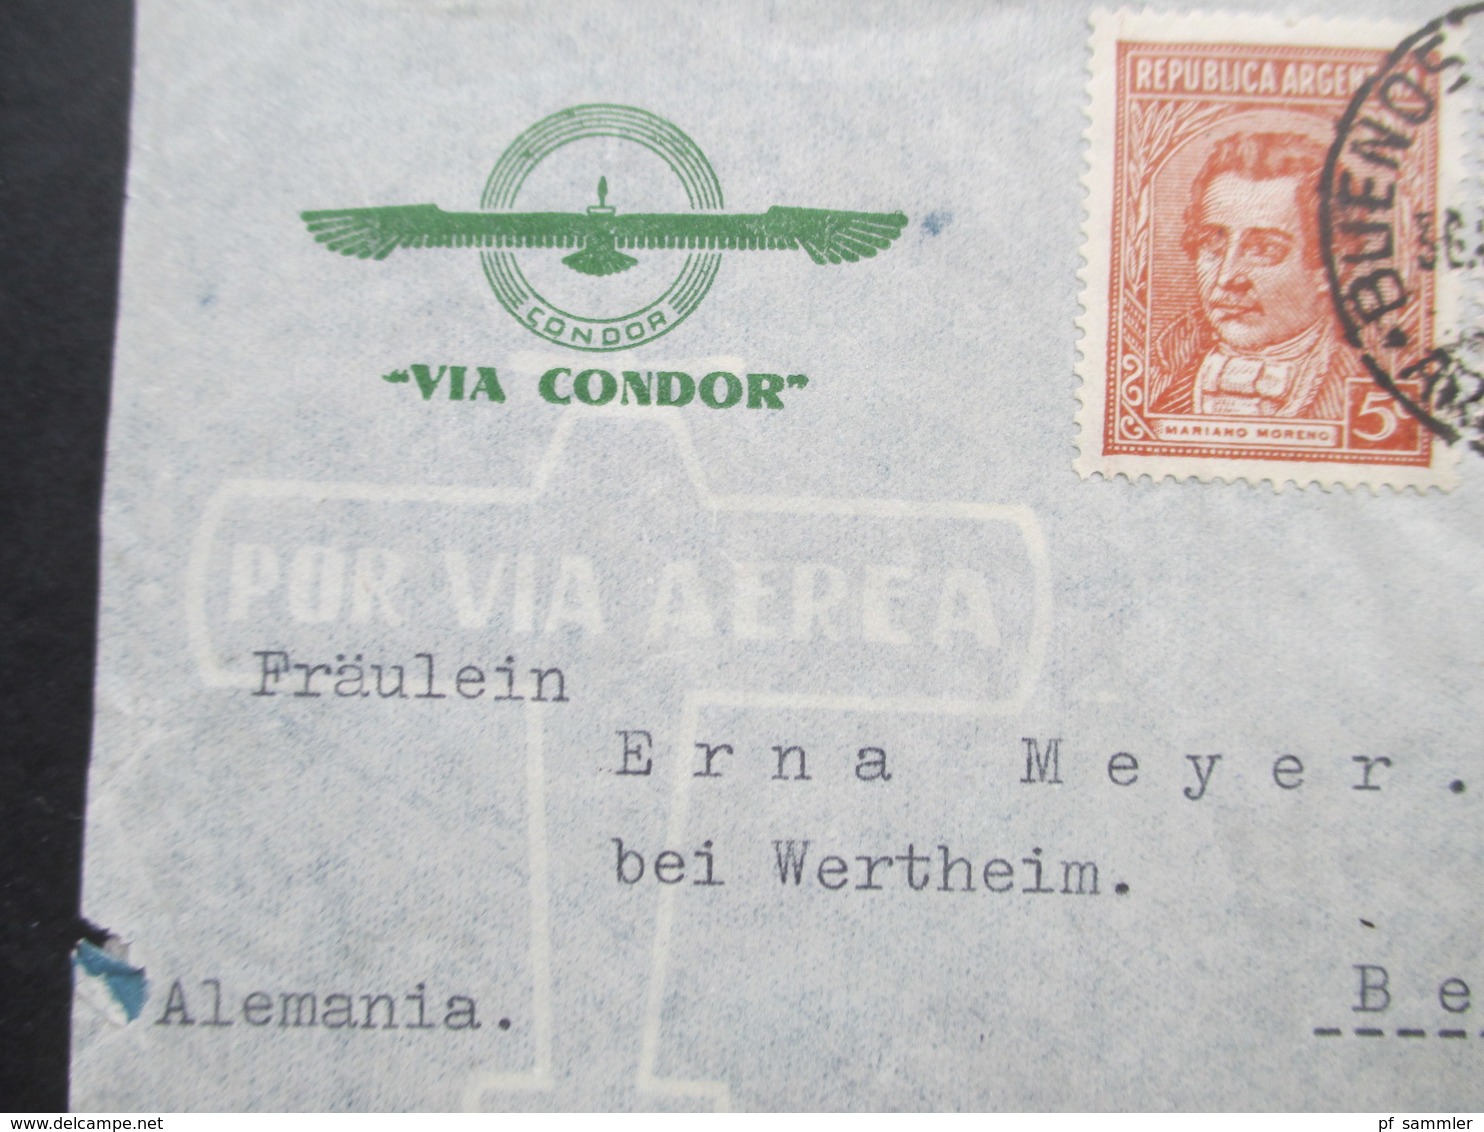 Argentinien 1940 Zensurpost Luftpost Via Condor Mit Mehrfachzensur Der Wehrmacht OKW Verschlussstreifen Geöffnet - Briefe U. Dokumente